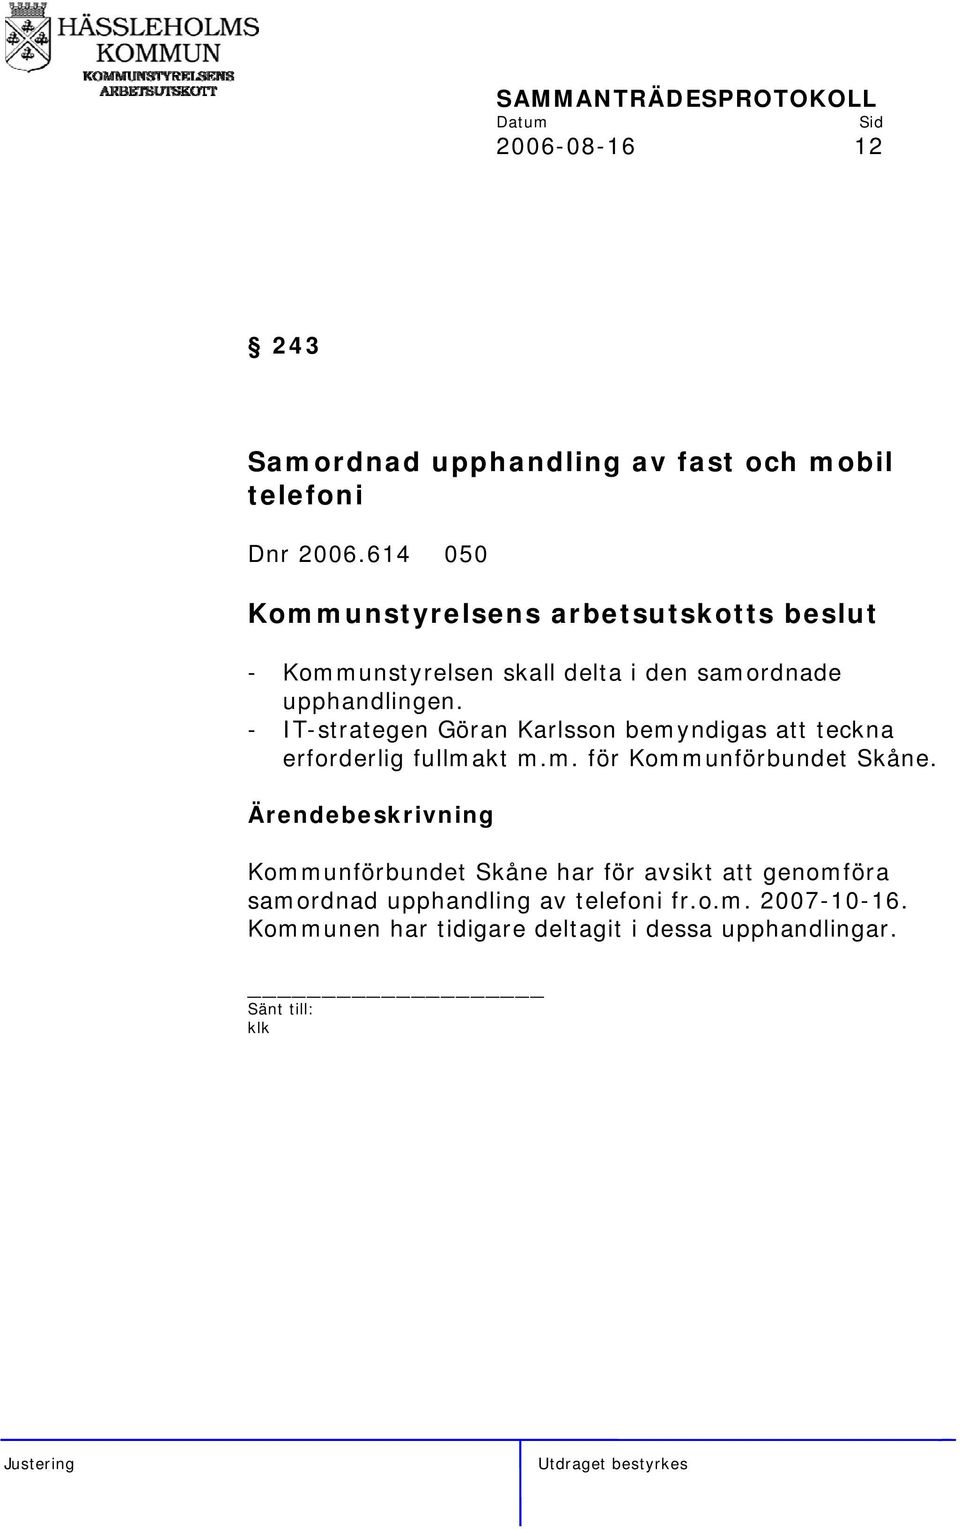 - IT-strategen Göran Karlsson bemyndigas att teckna erforderlig fullmakt m.m. för Kommunförbundet Skåne.